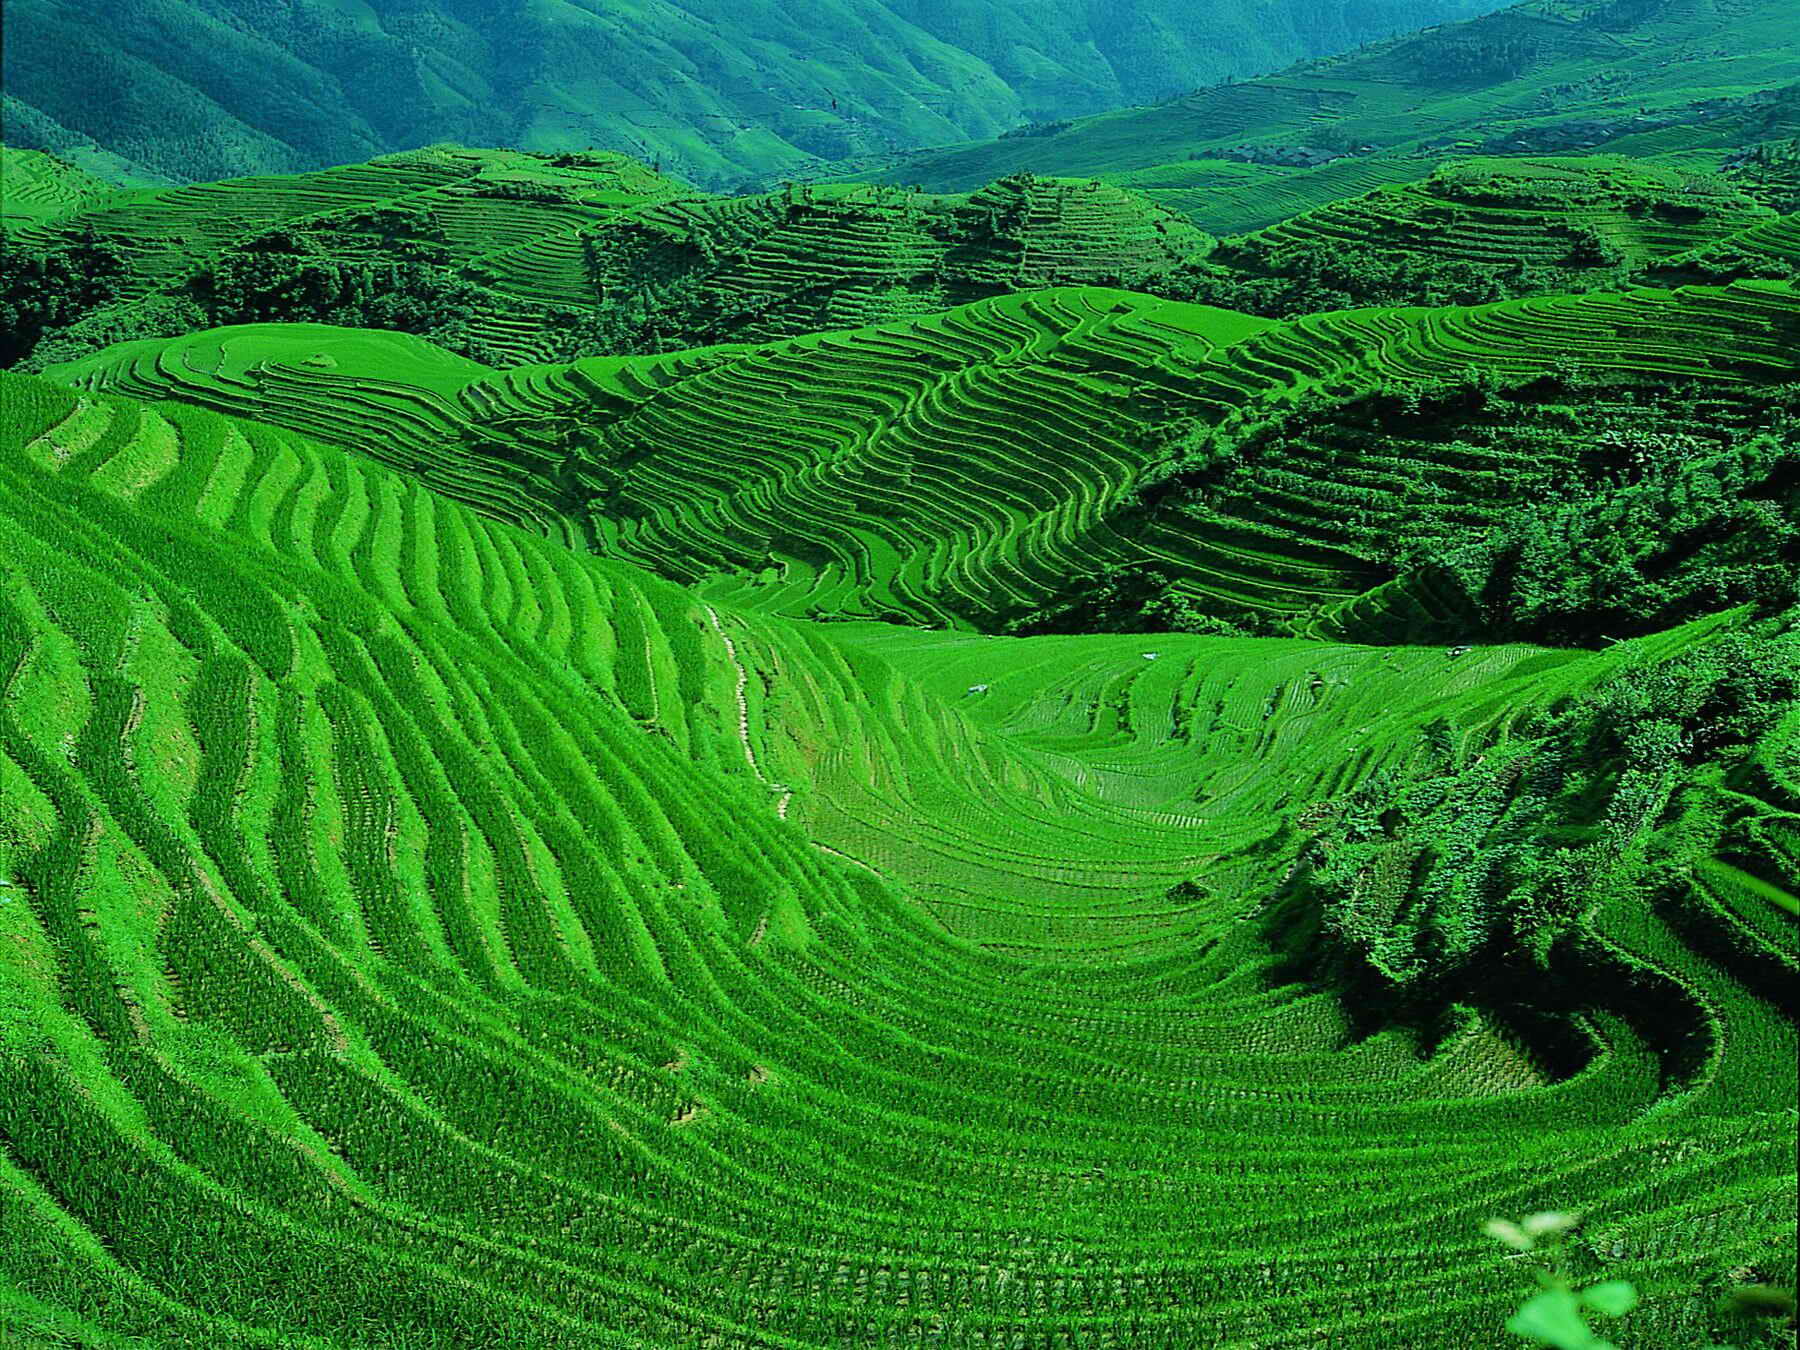 Hunderte Jahre lang haben in Yuanyang verschiedene Volksgruppen auf den Hängen des Ailao-Gebirges endlose Terrassen angelegt, um dort Reis anbauen zu können.